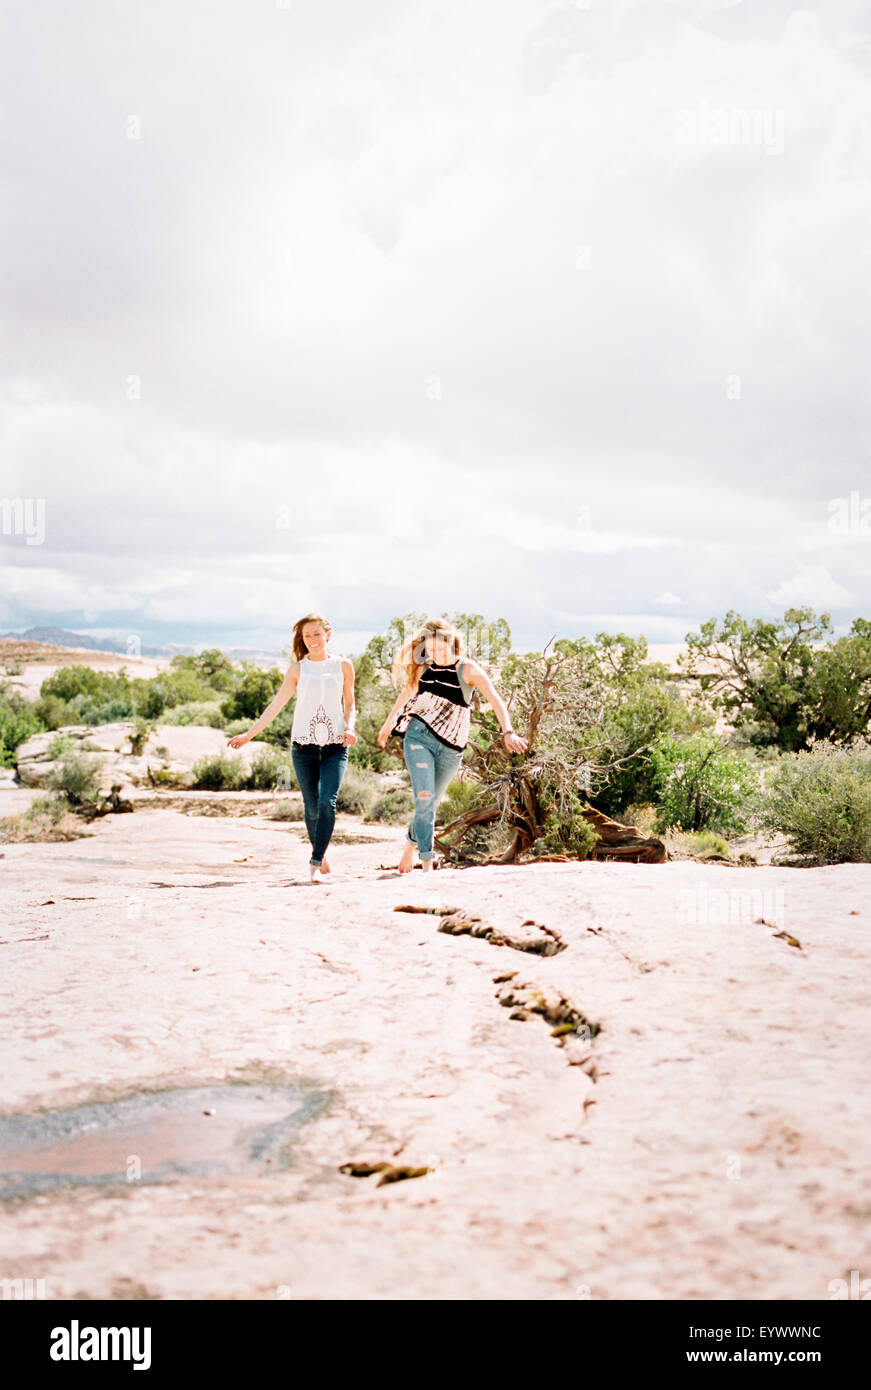 Two barefoot women walking in a desert. Stock Photo